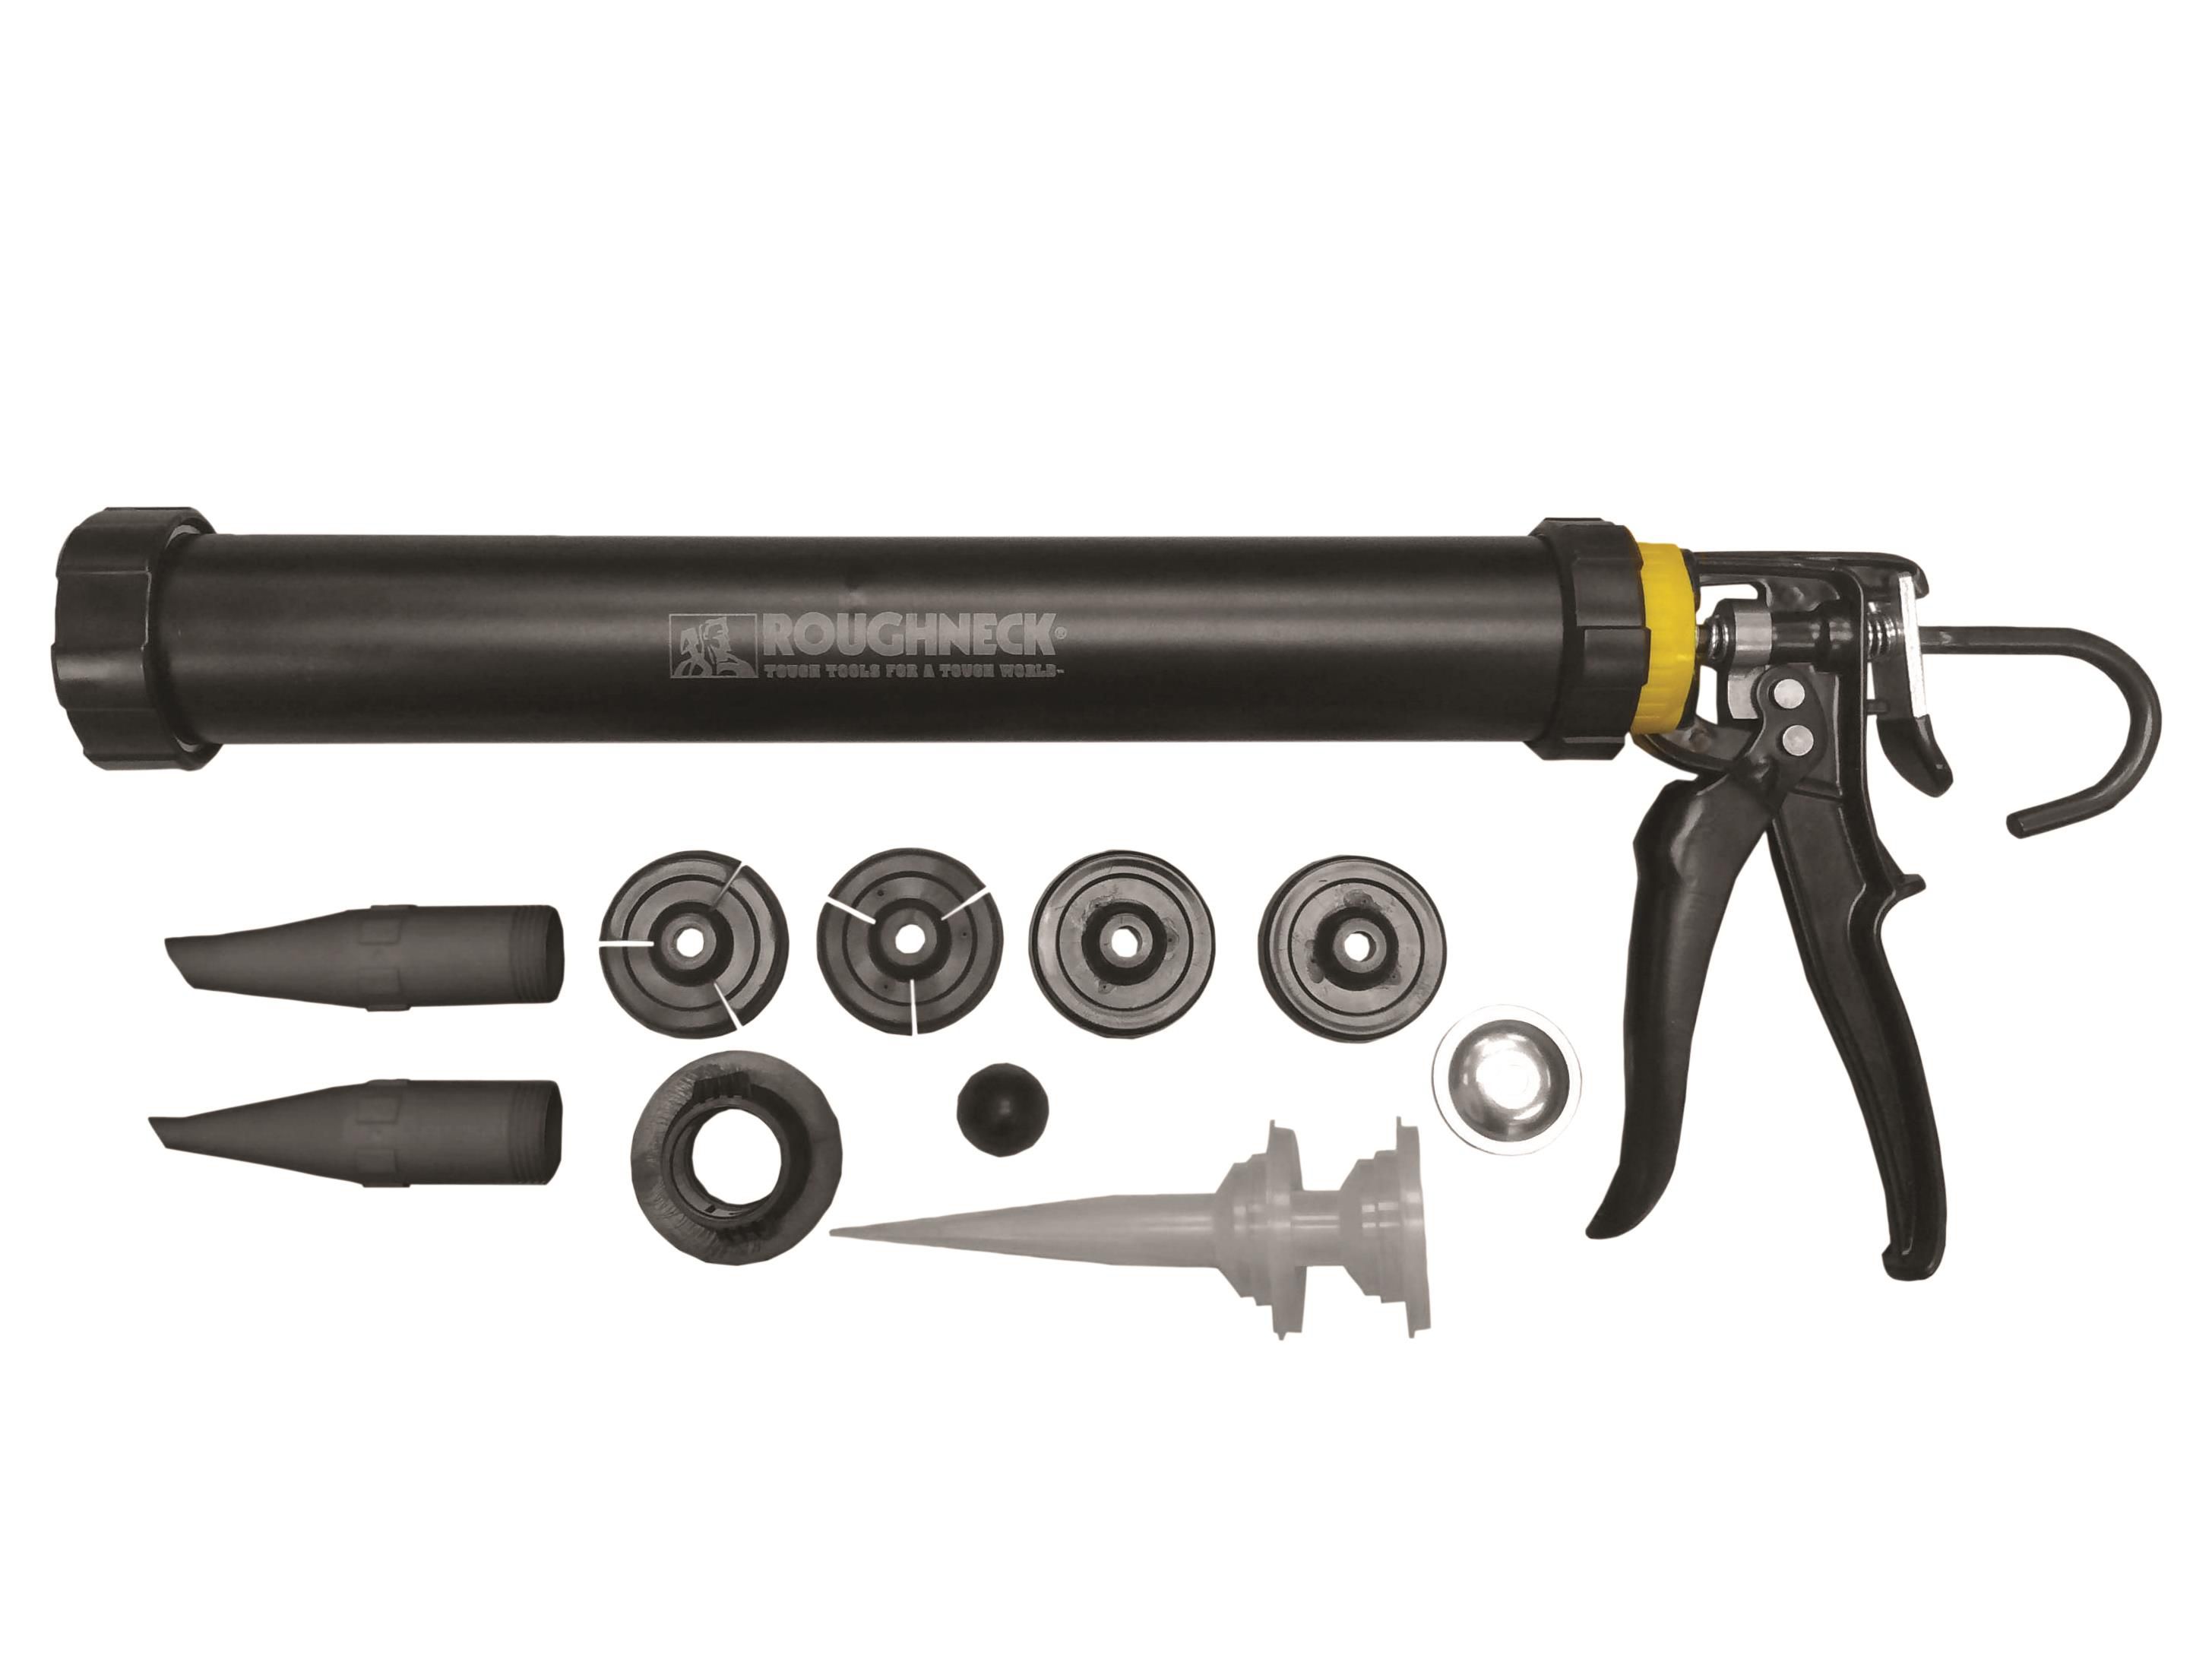 Roughneck Ultimate Mortar Gun Kit